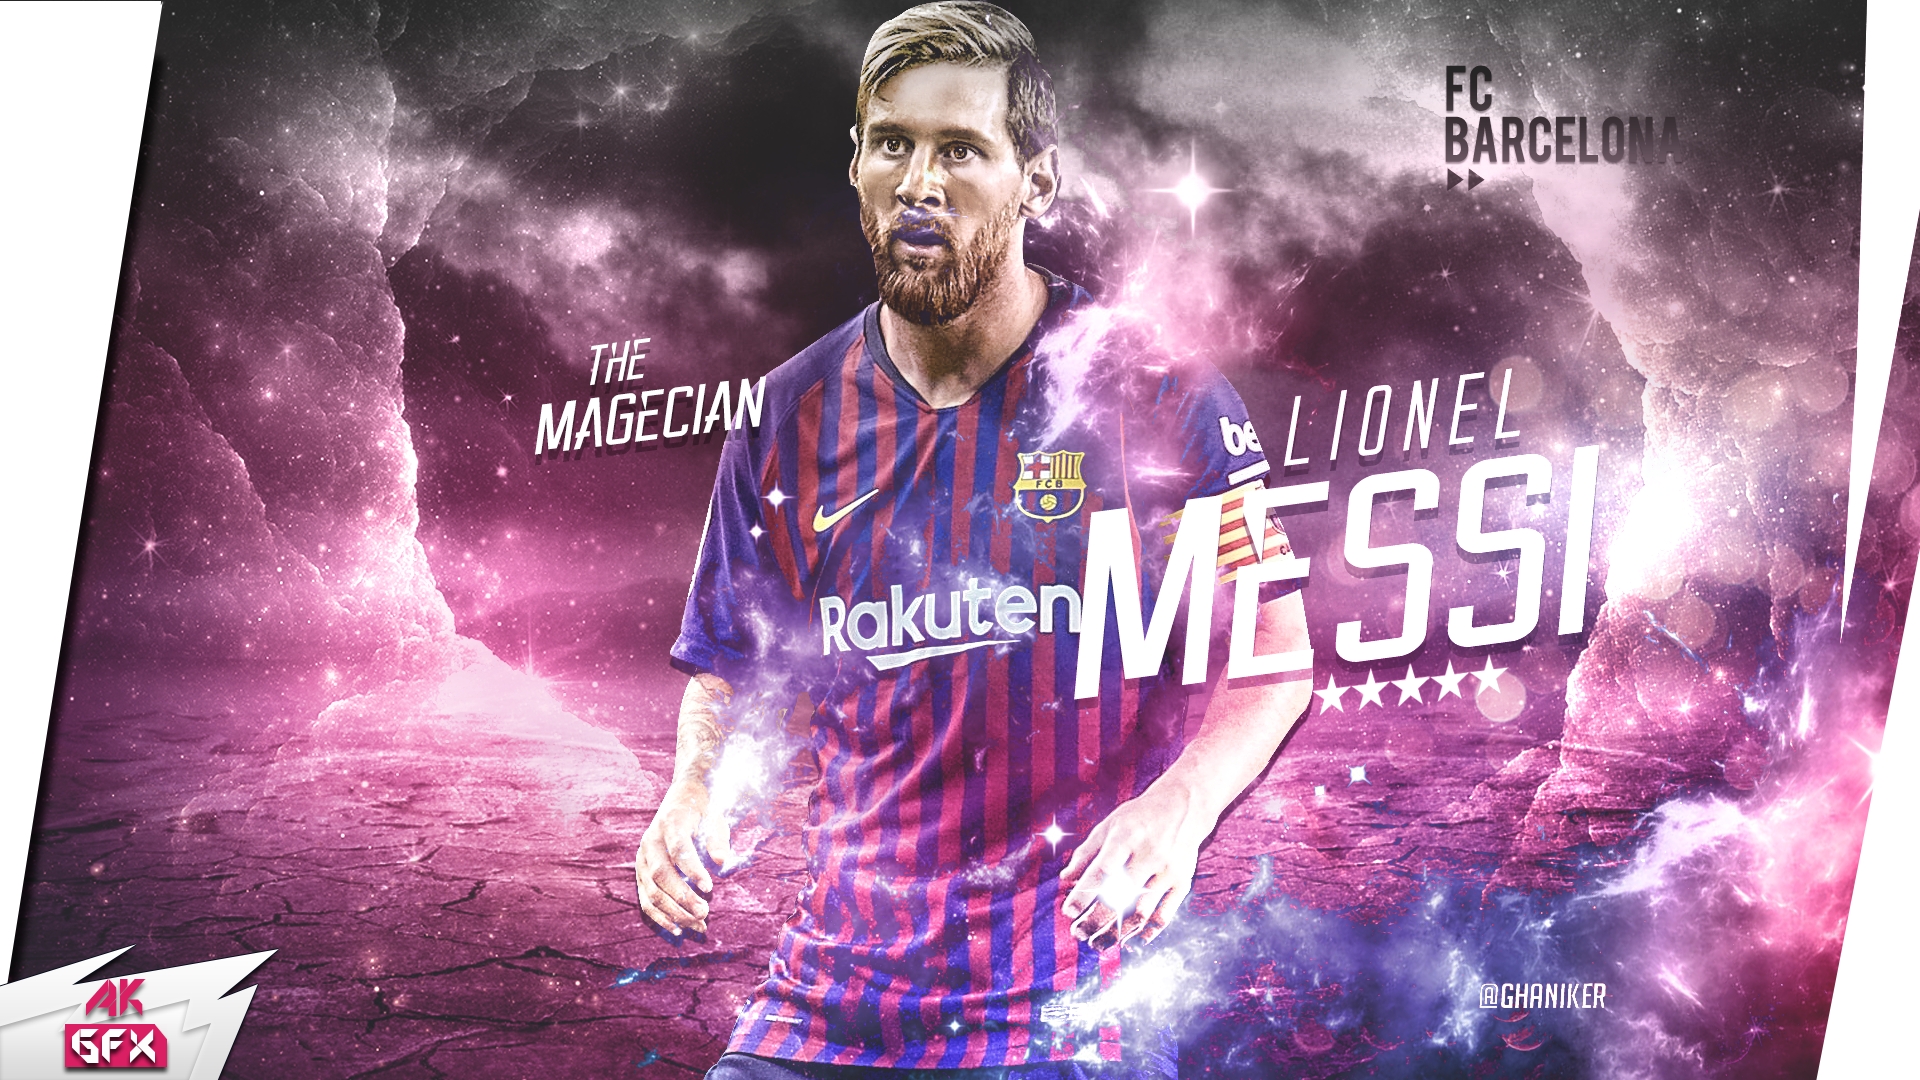 Hình nền Lionel Messi tại Barca với độ phân giải cao sẽ khiến mọi fan hâm mộ Messi và Barca phải trầm trồ. Hãy xem ảnh này và cảm nhận sự uyển chuyển và khả năng chơi bóng đá siêu hạng của Messi.